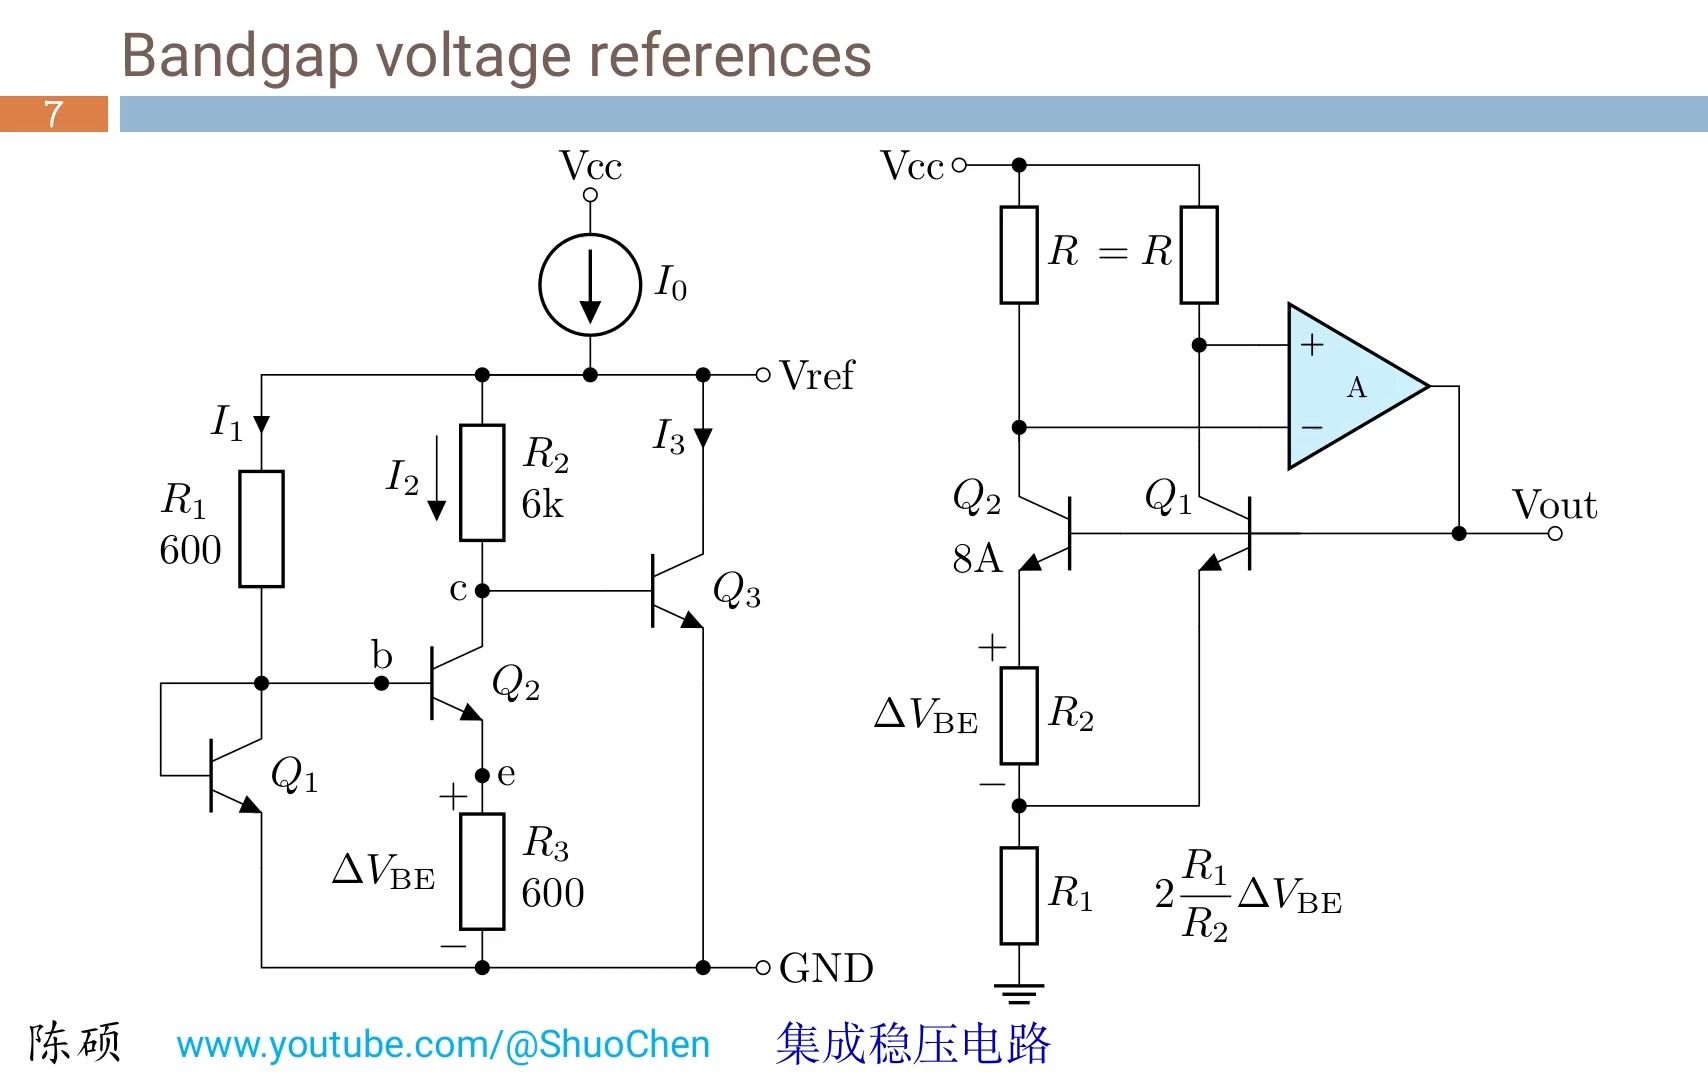 集成稳压电路 2:bandgap 电压基准电路原理,应用及仿真